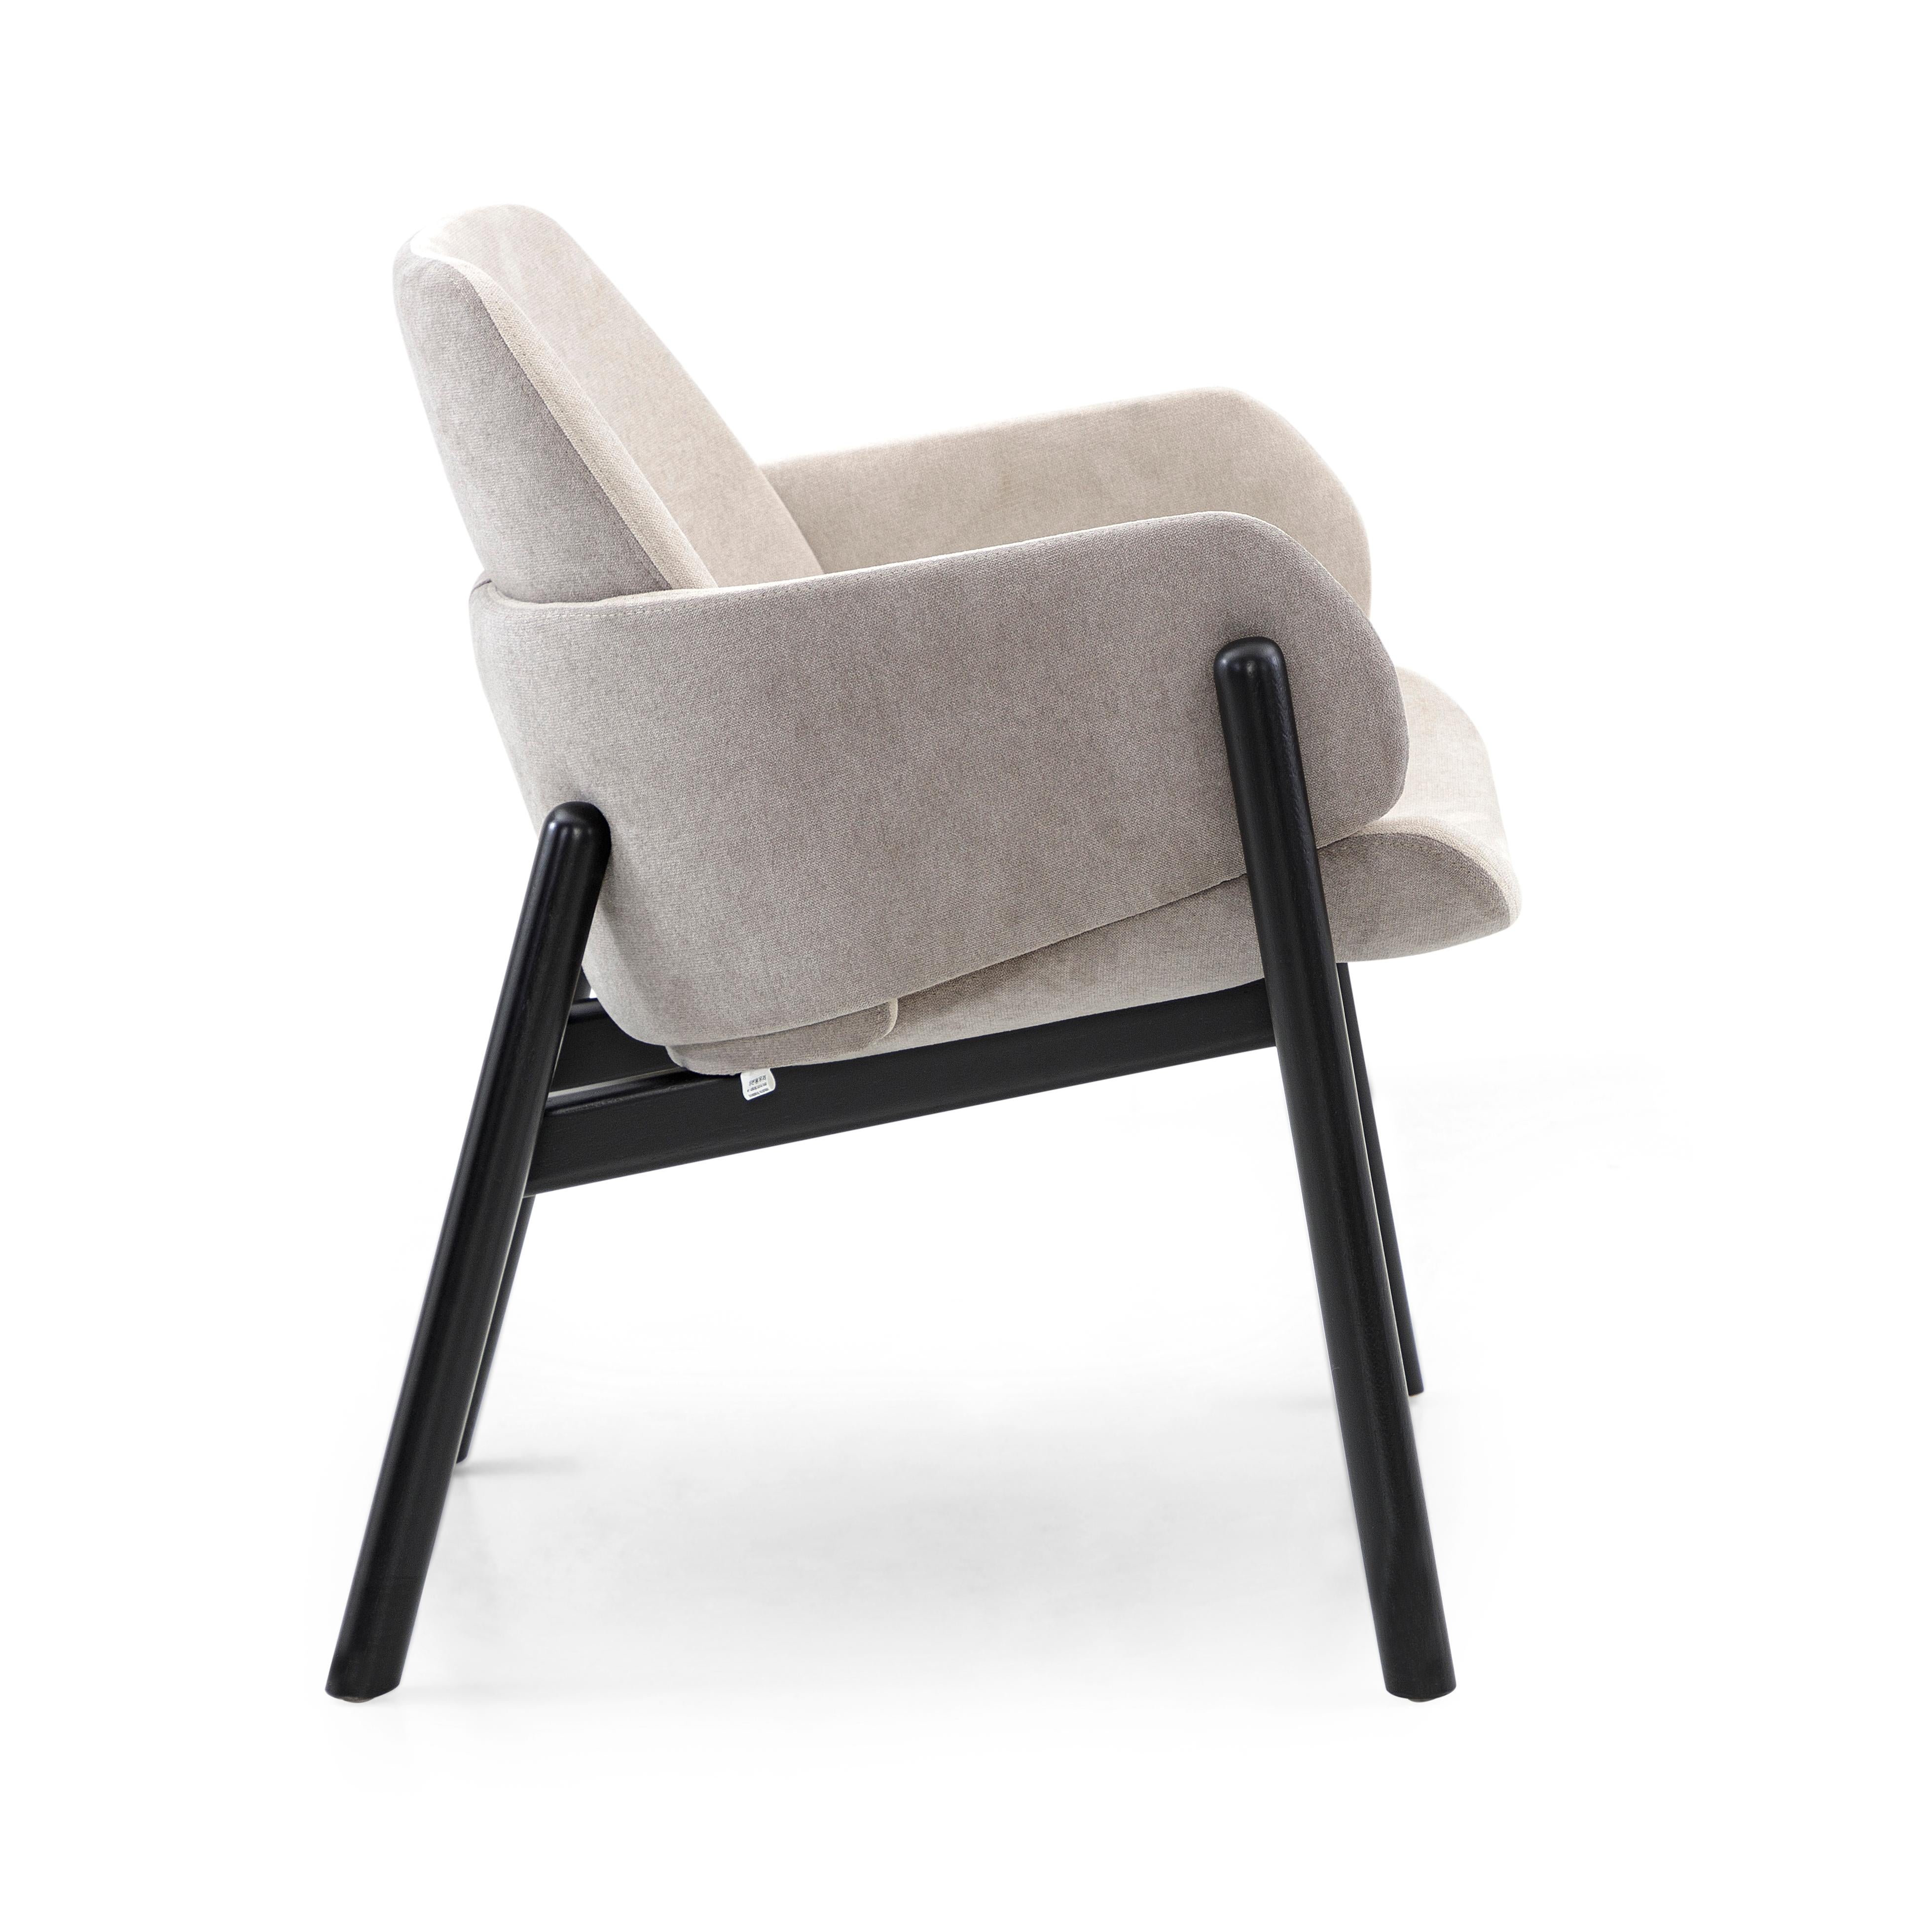 Der oben genannte Stuhl geht in puncto Design und Bequemlichkeit weit darüber hinaus. Durch die Kombination des hellgrauen Stoffes mit dem schwarz lackierten Gestell lässt sich der Above Stuhl sowohl in bereits eingerichteten als auch in neu